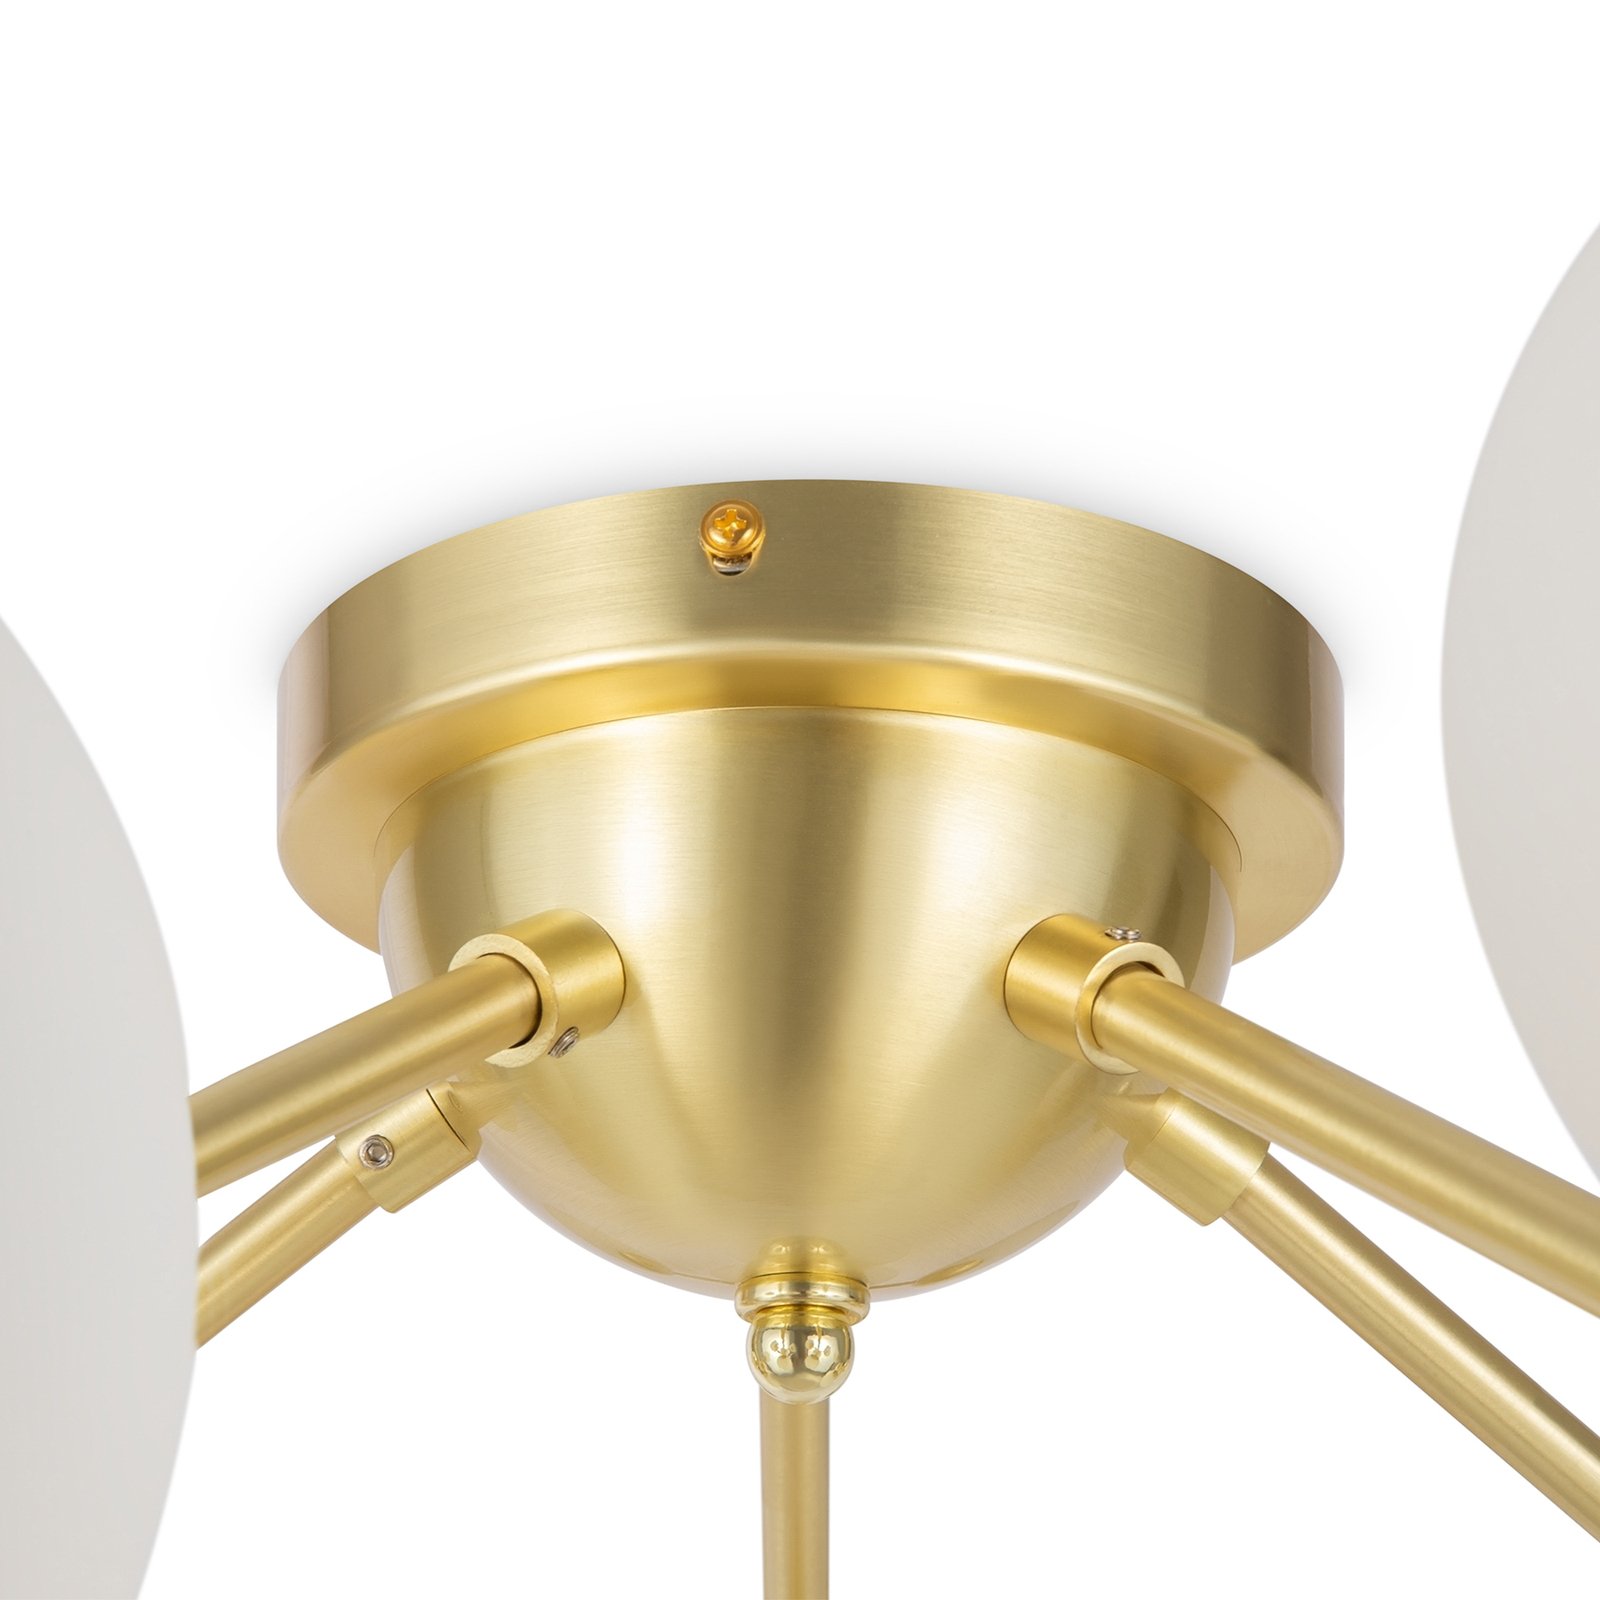 Lampa sufitowa Maytoni Dallas 20-light, wysokość 25 cm, złota